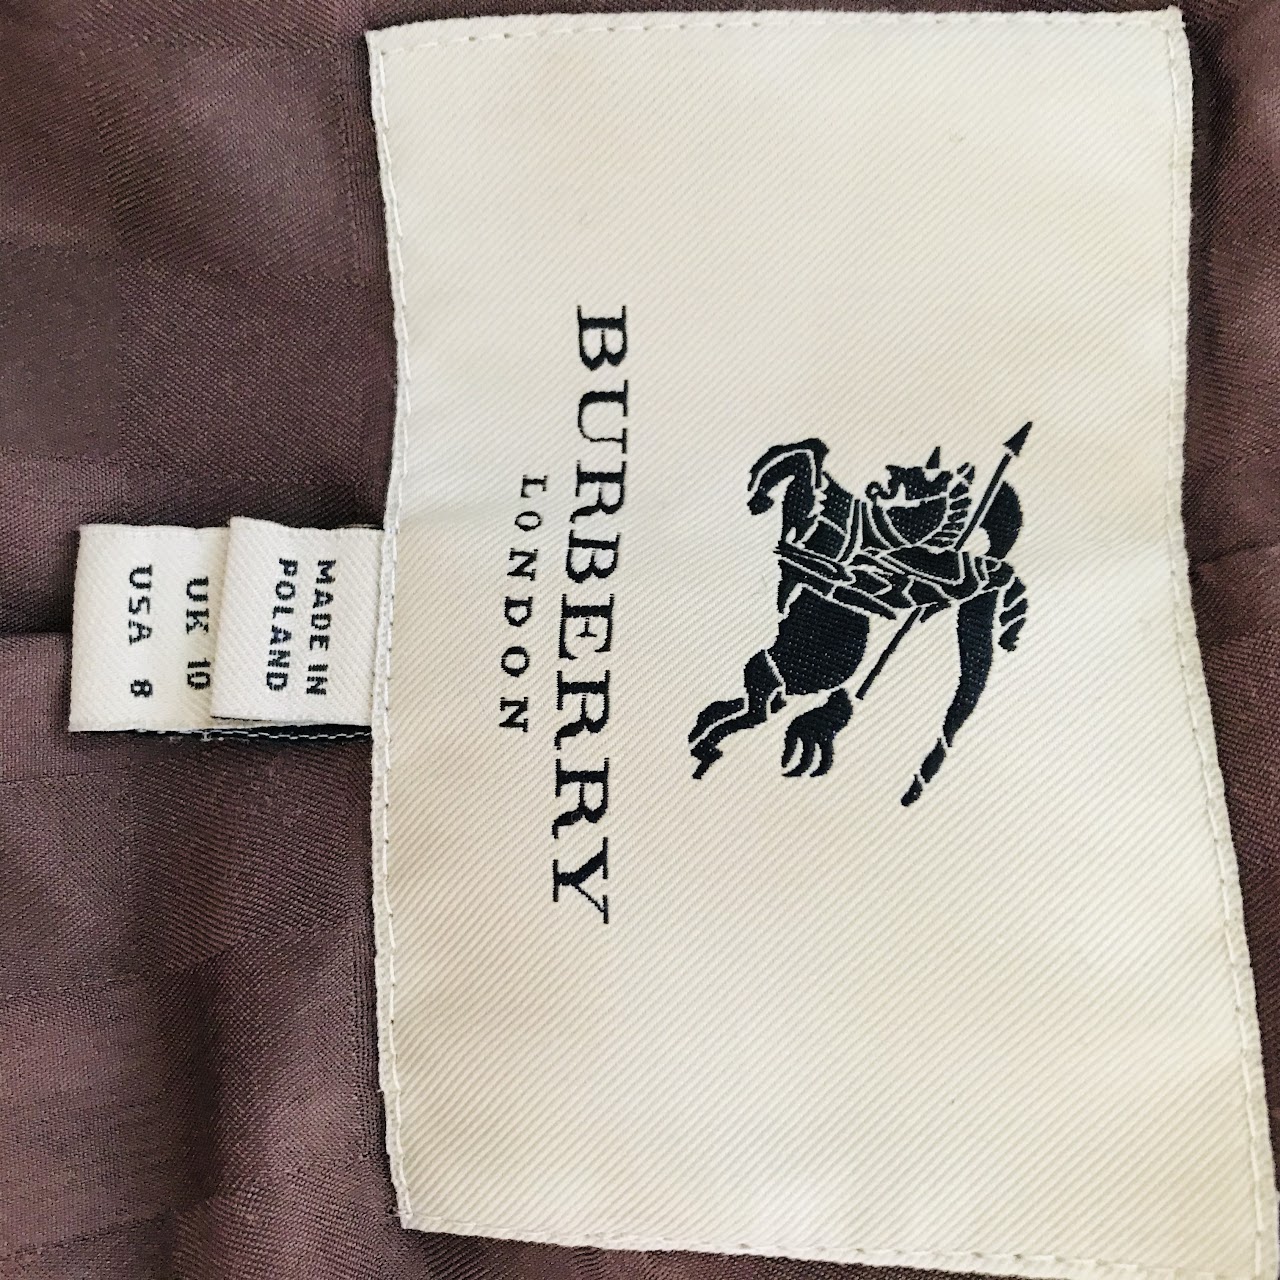 Burberry London Brown Wool Jacket